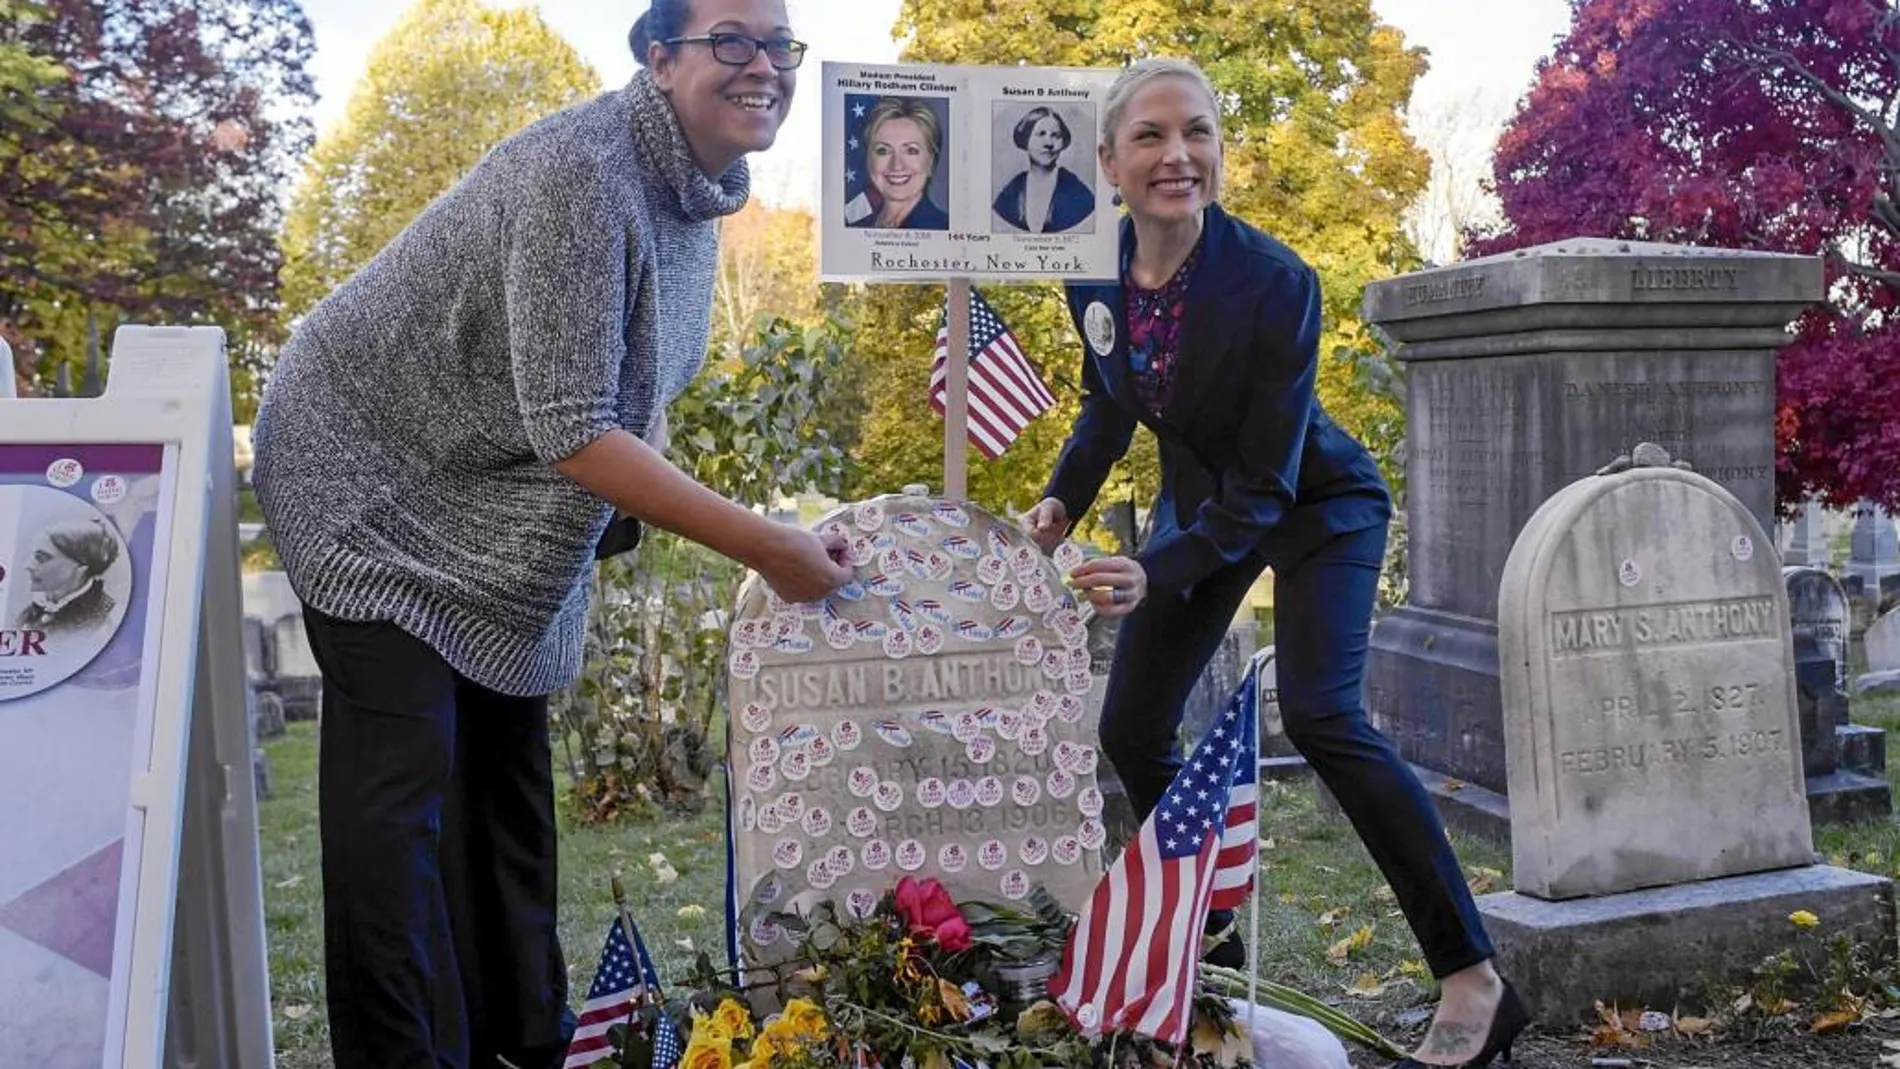 Muchos aprovecharon las elecciones para visitar la tumba de Susan B. Anthony, líder del movimiento sufragista en EE UU